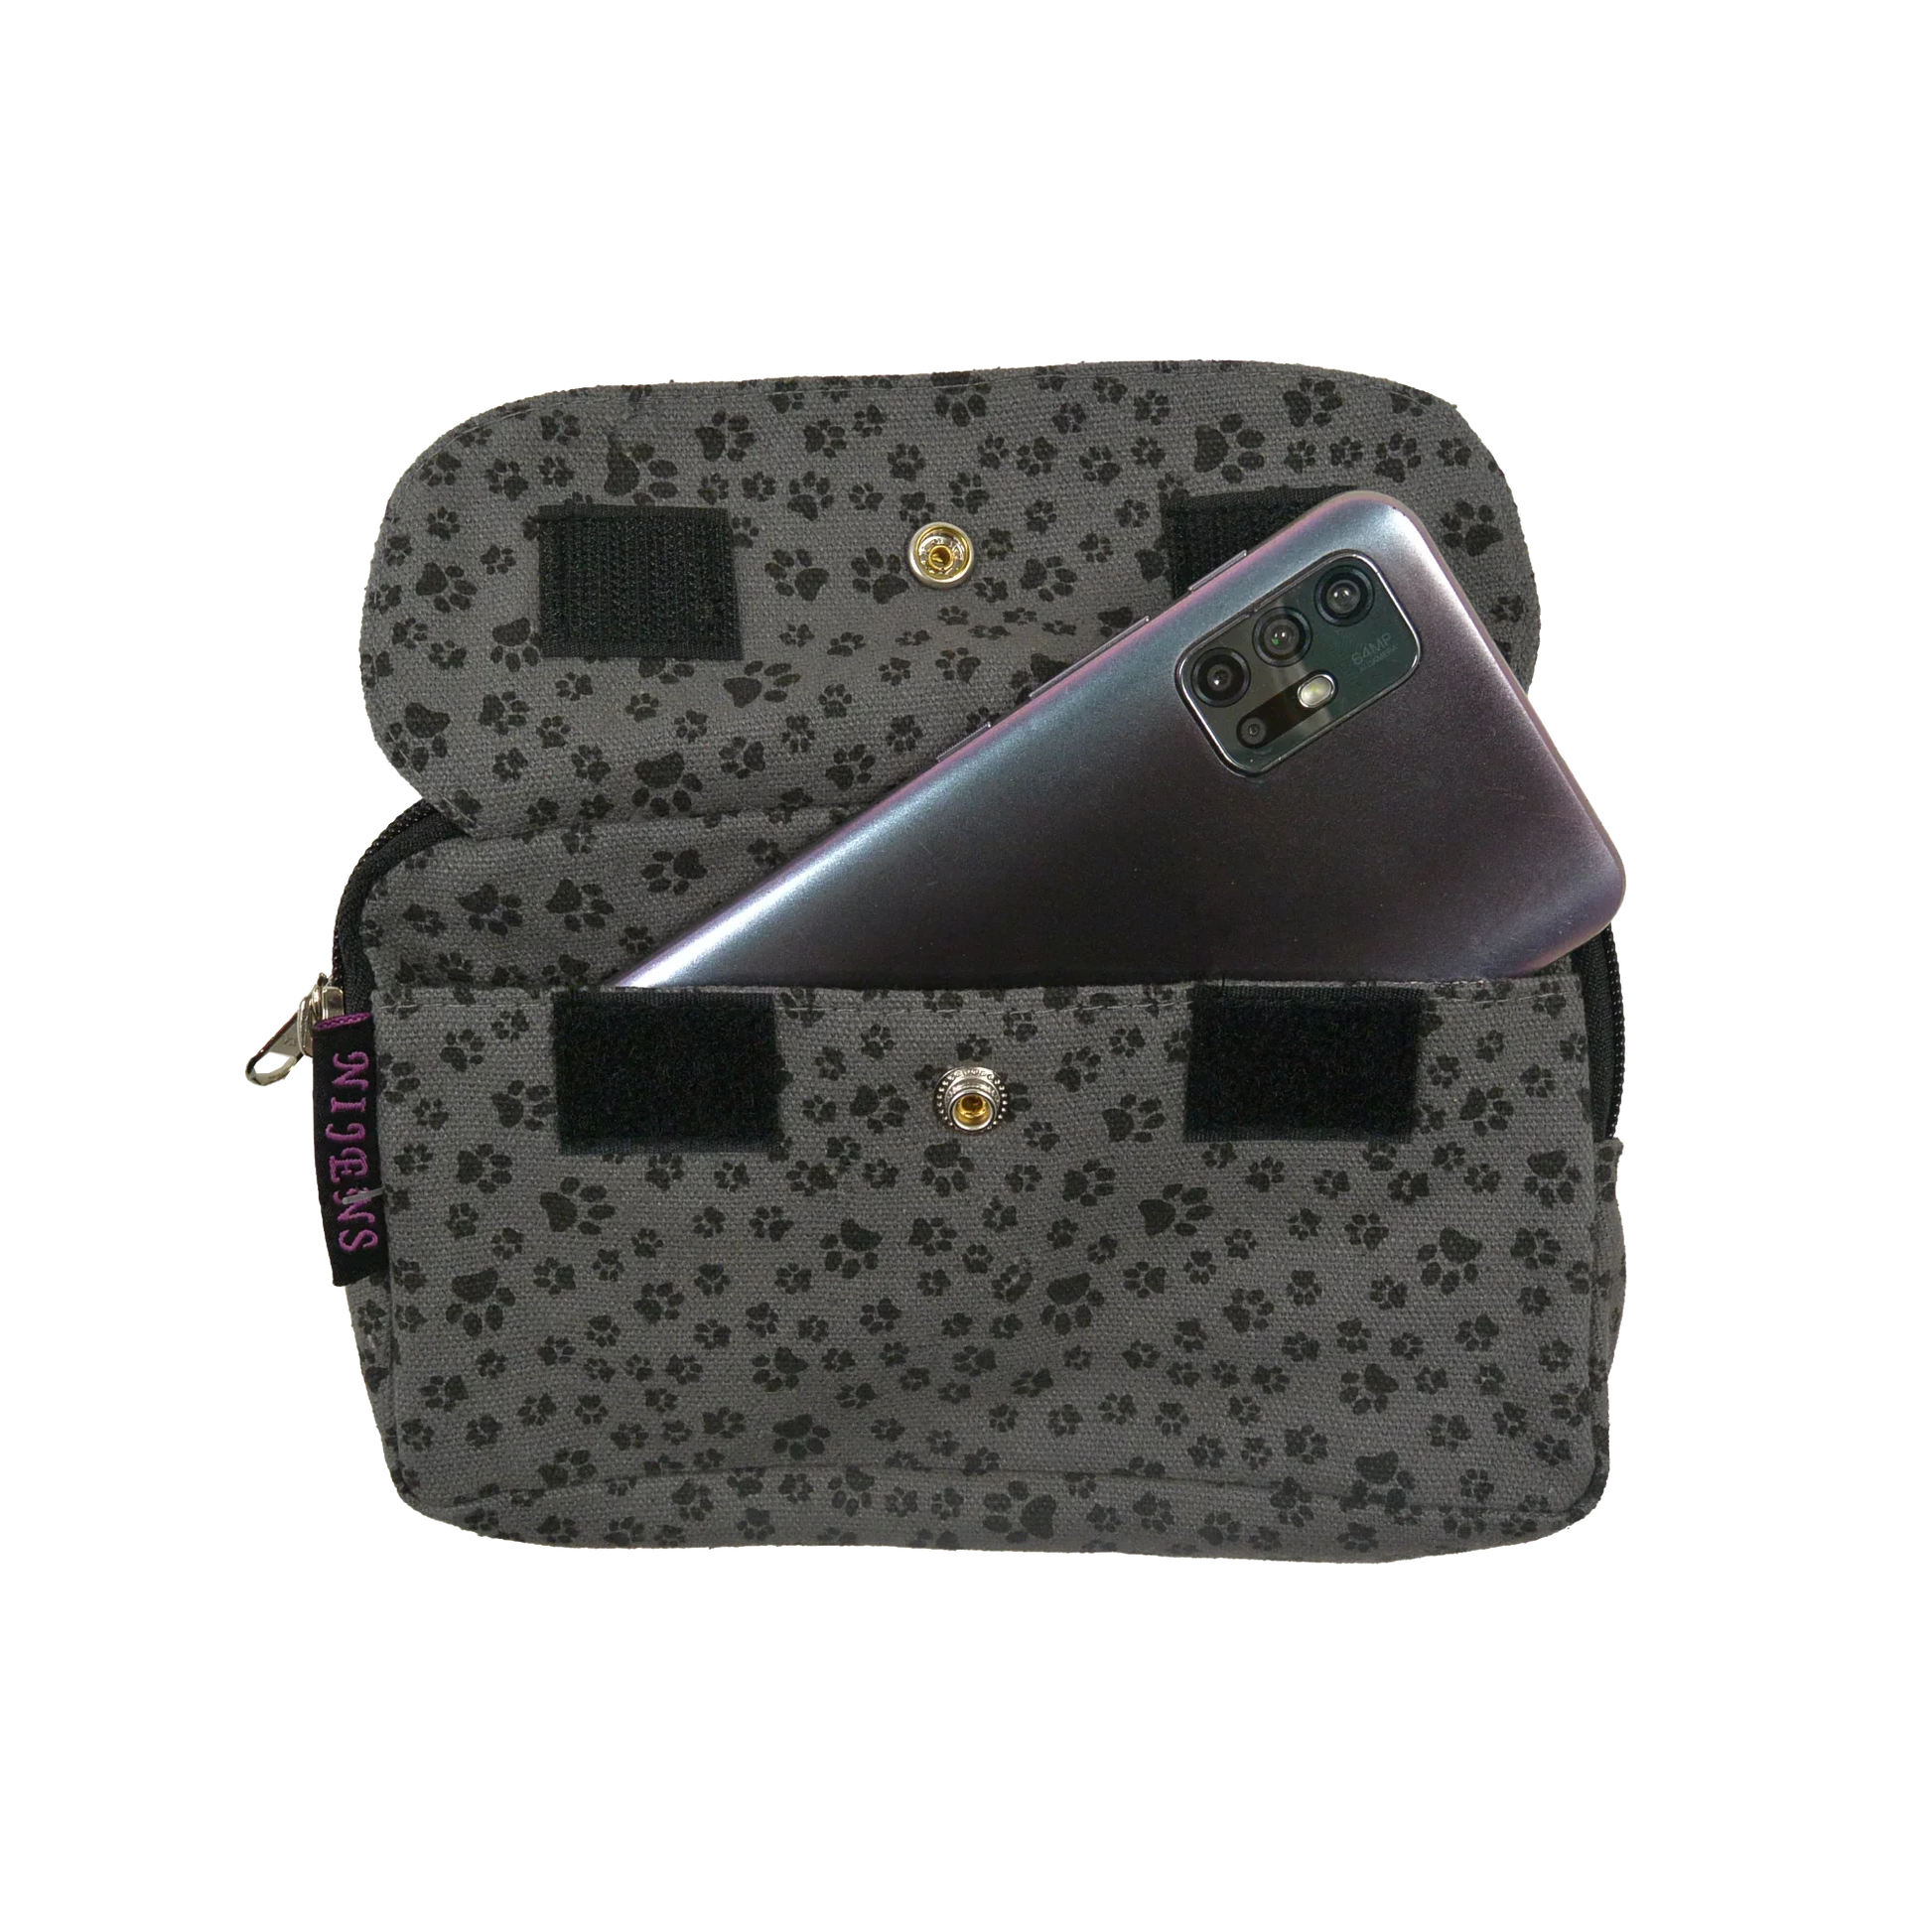 Beuteltasche aus Canvas grau mit Pfotenmotiven. Die Tasche besitzt Reisverschlussfächer und ein Einsteckfach vorne, welches mit Druckknopf und Klett verschließbar ist.